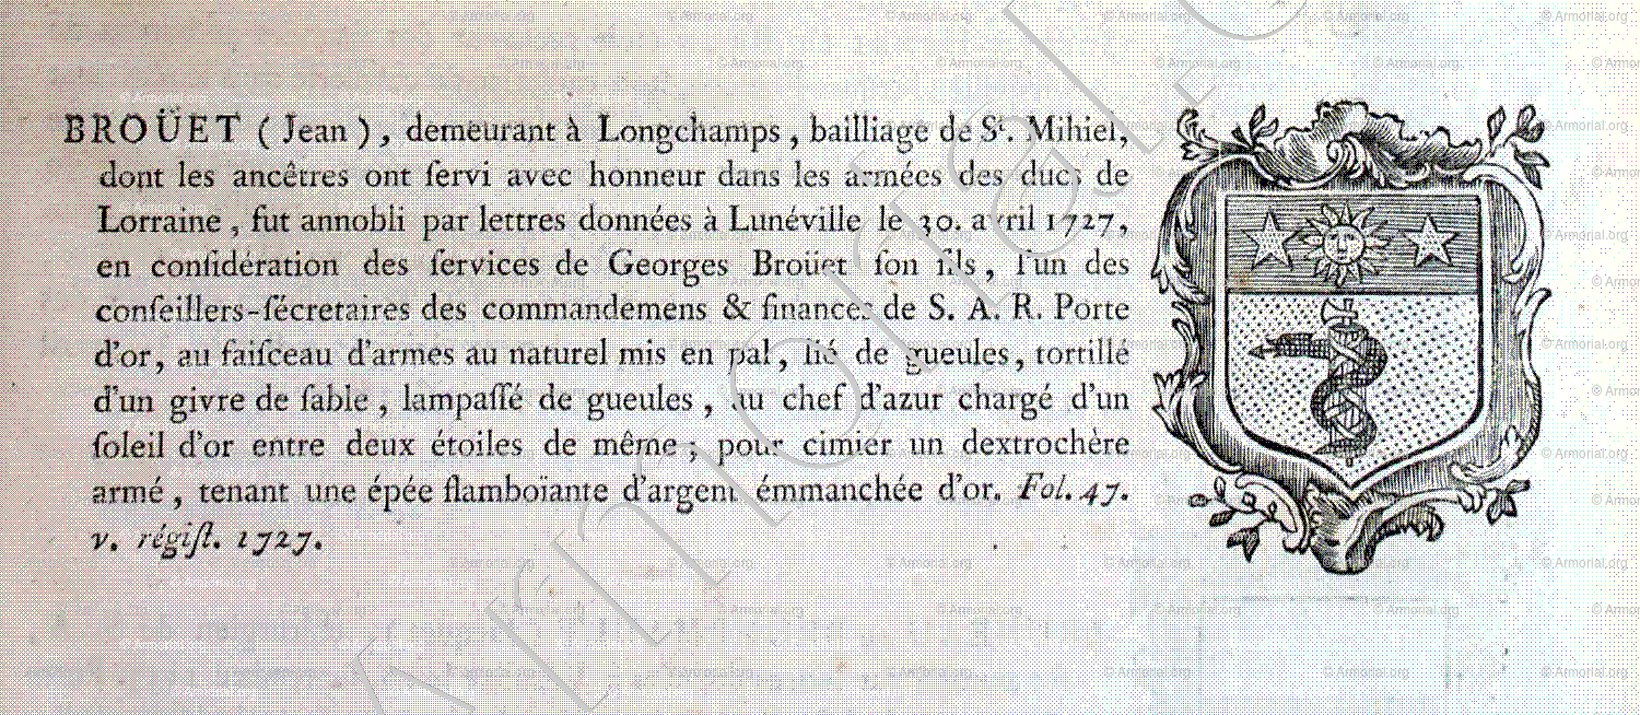 BROÜET_Nobiliaire et Armorial de Lorraine. (A. dom Pelletier, 1758) _France (1)